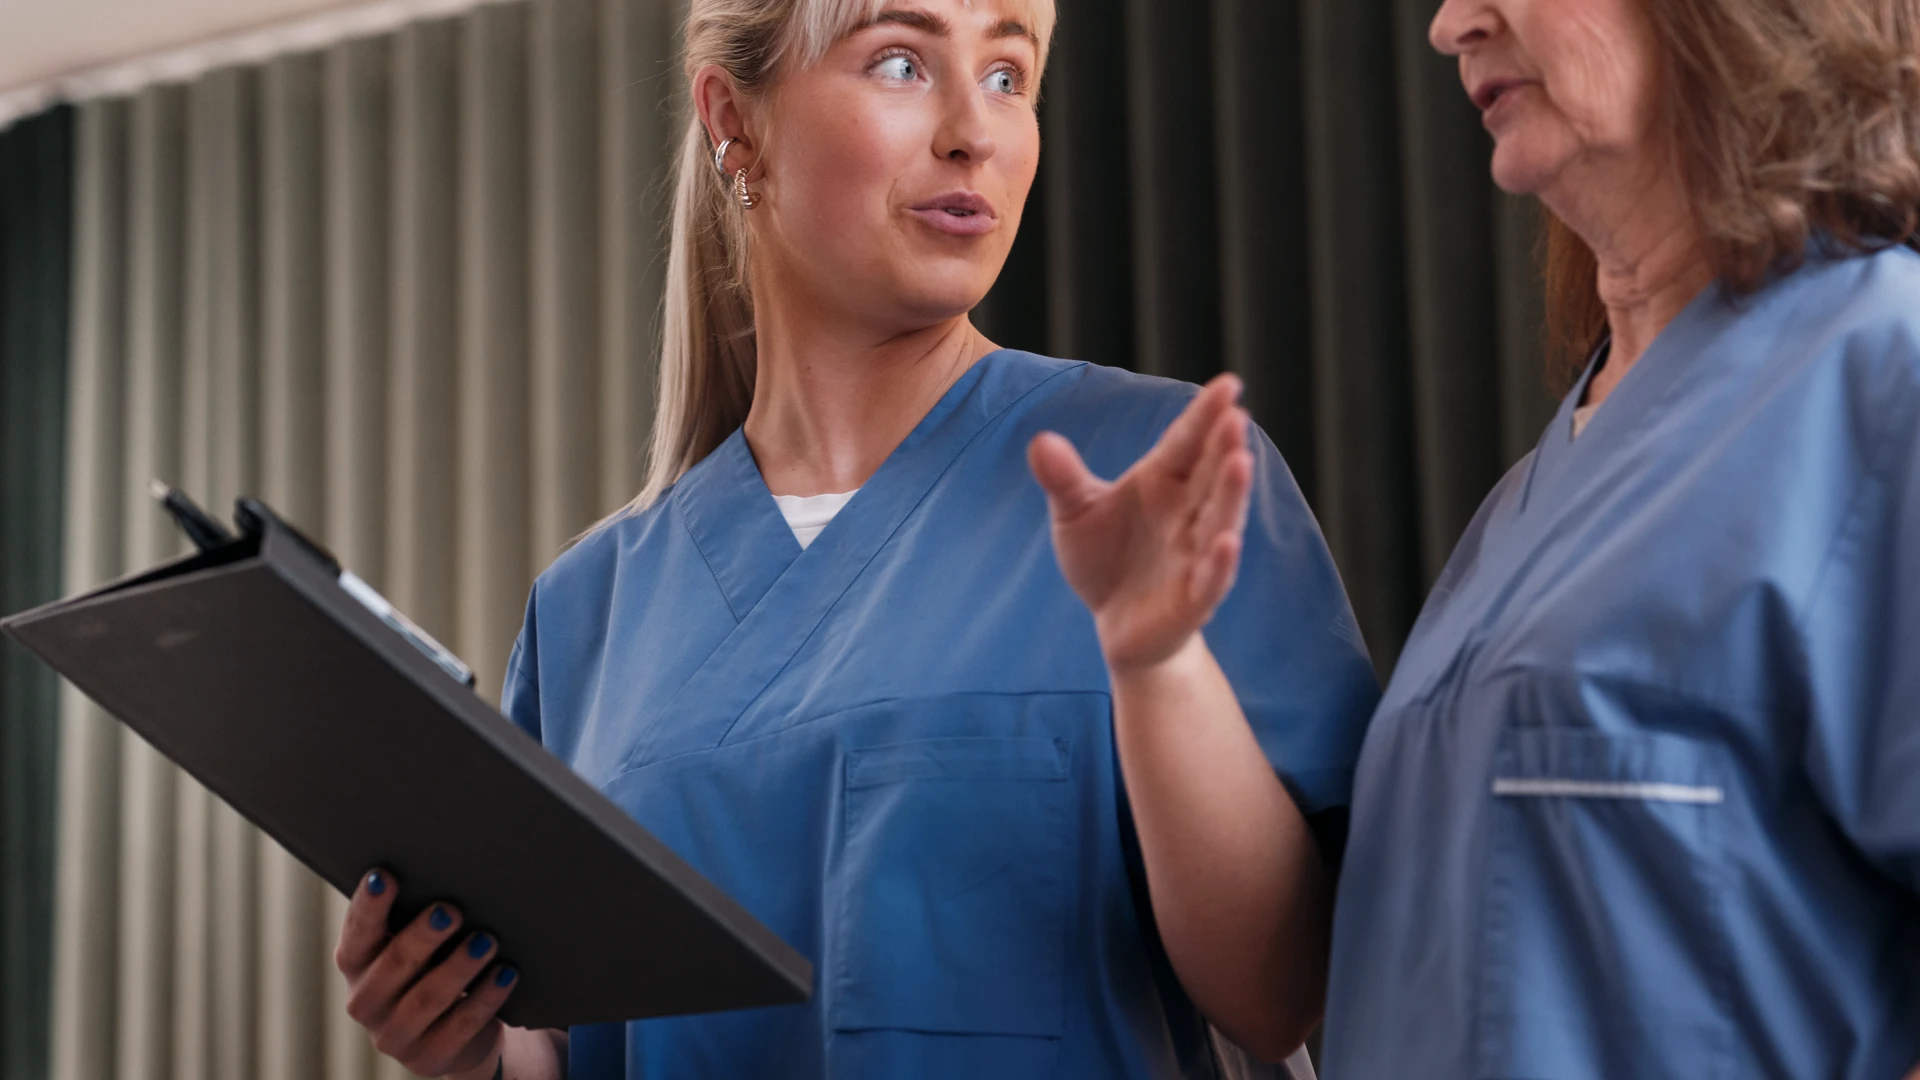 Två kvinnor i blå sjukhusskjortor samtalar i en korridor.